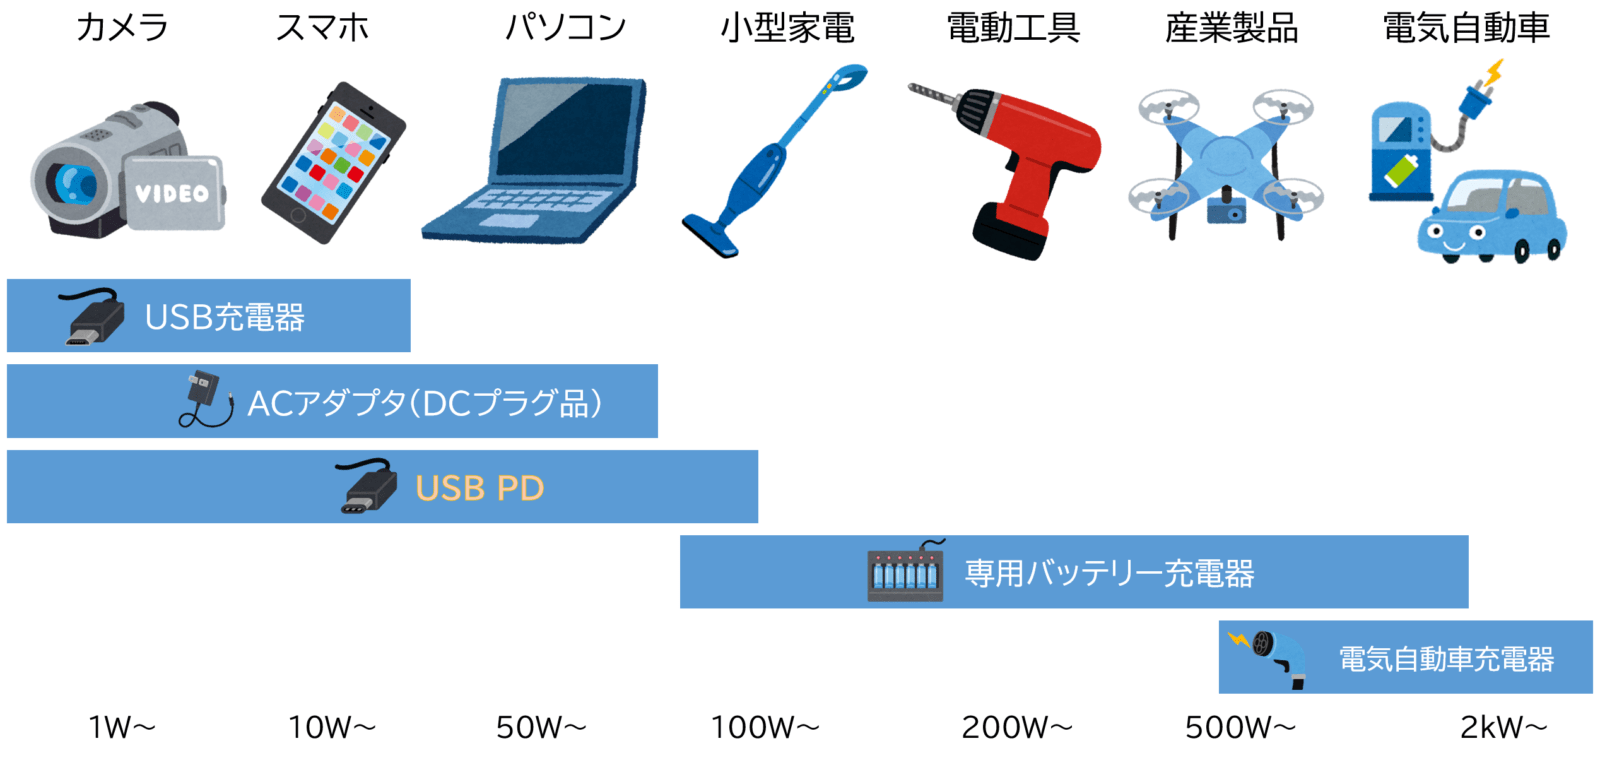 電動工具バッテリーの充電電力とUSB PD